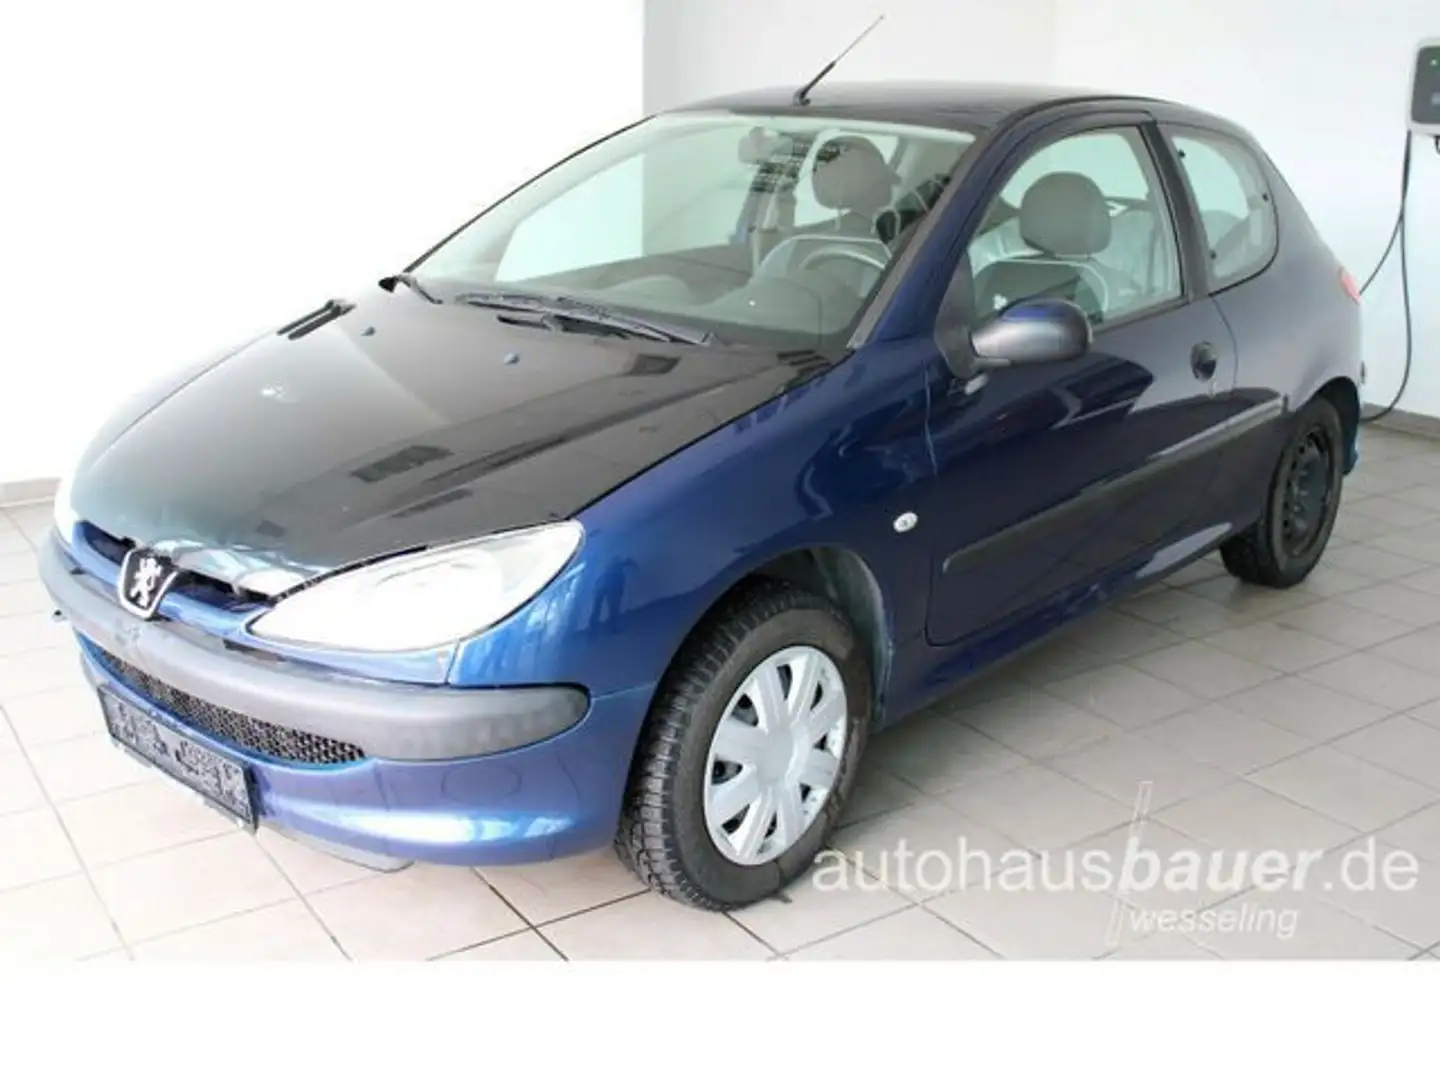 Peugeot 206 Kleinwagen in Blau gebraucht in Wesseling für € 960,-